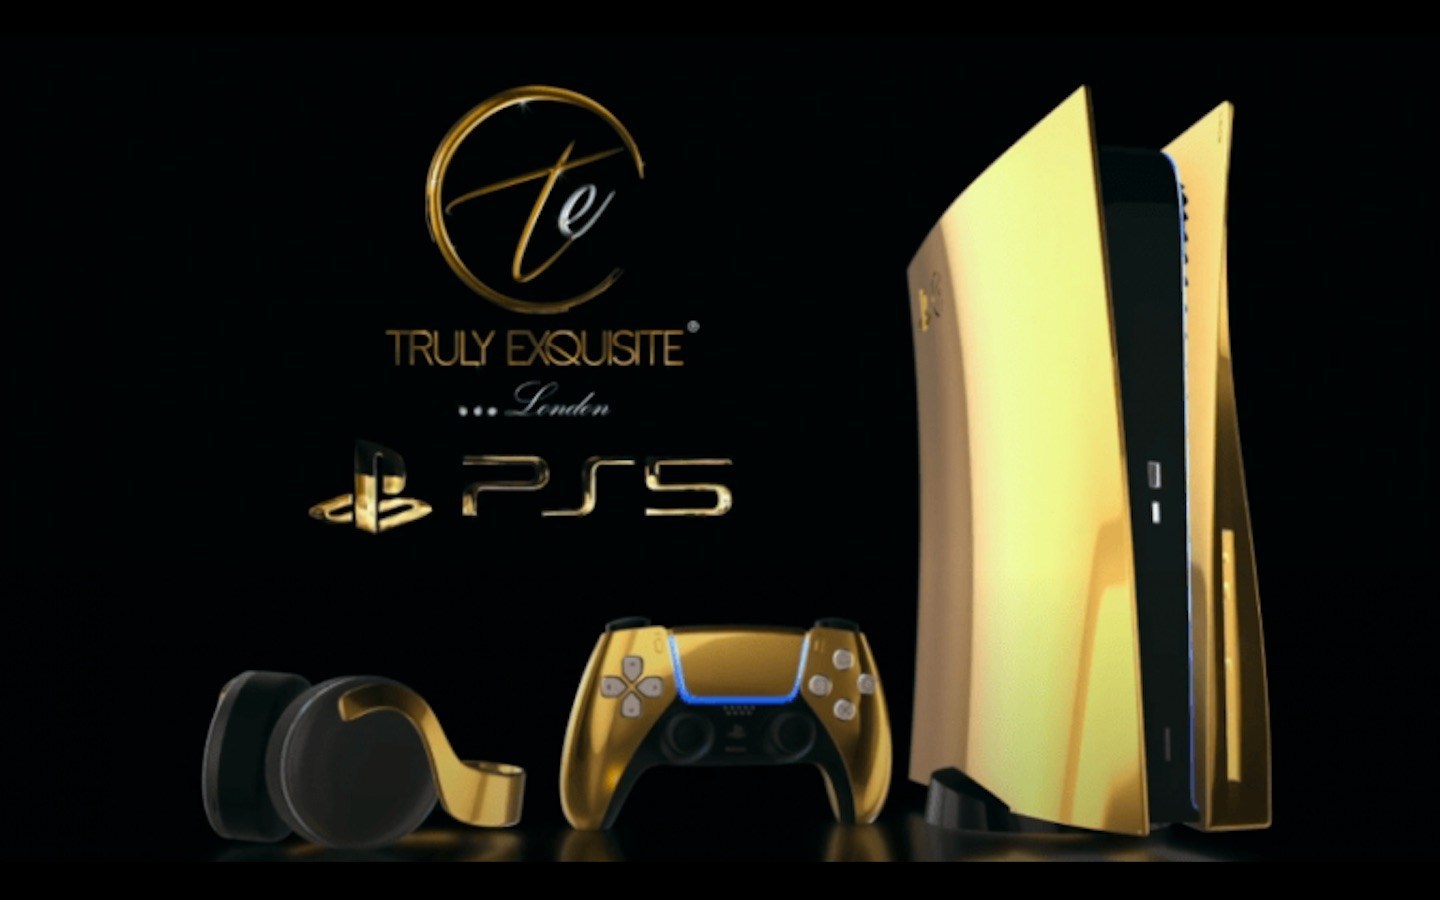 PlayStation 5: ¿Qué accesorios se lanzarán junto con la consola? - Cultura  Geek